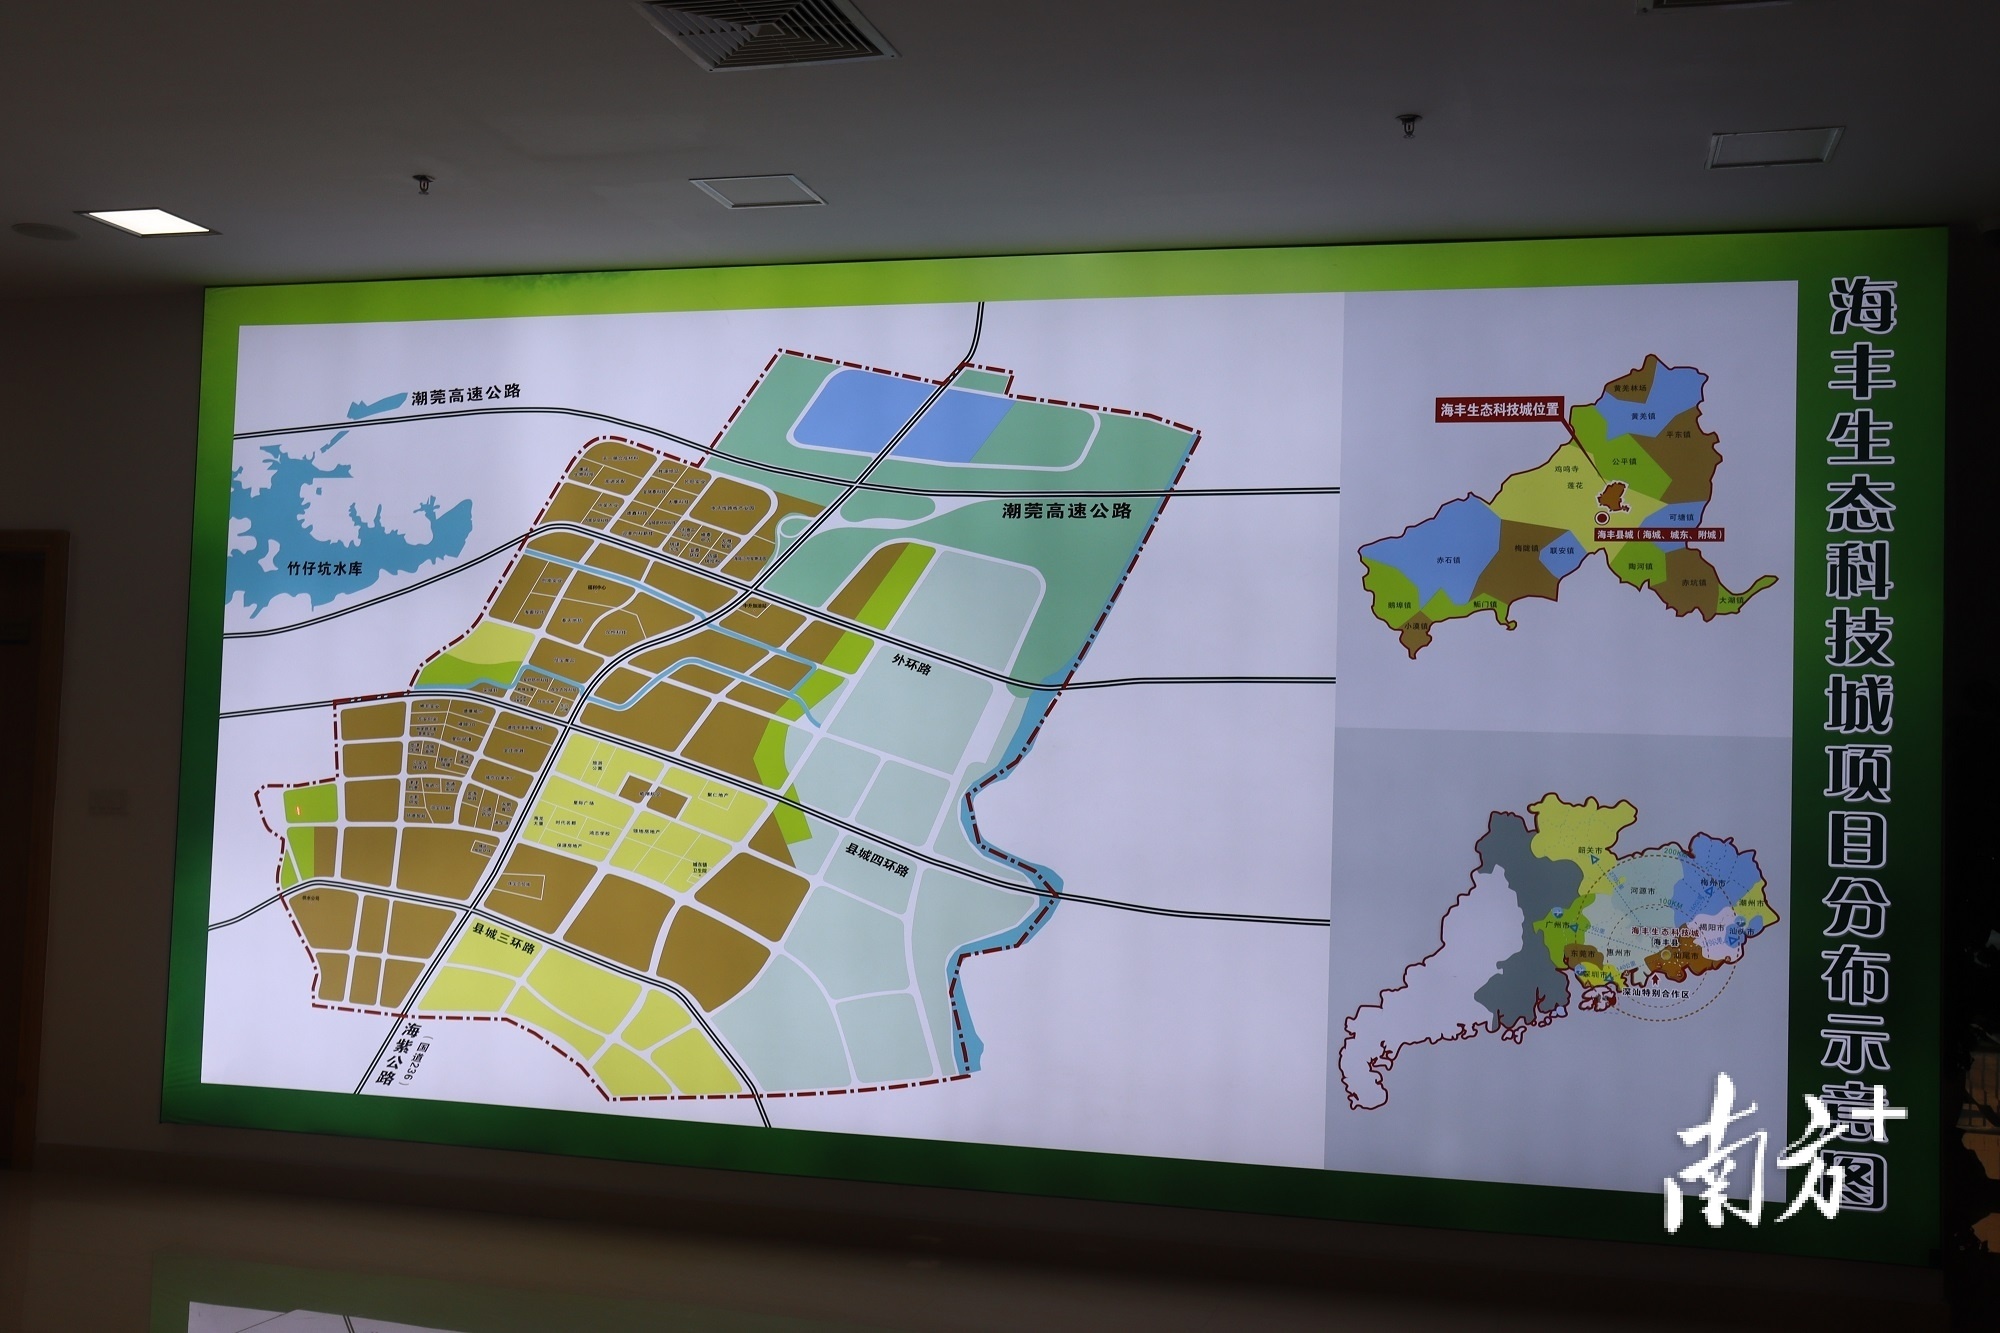 海丰生态科技城项目分布示意图。  郭杨阳 摄